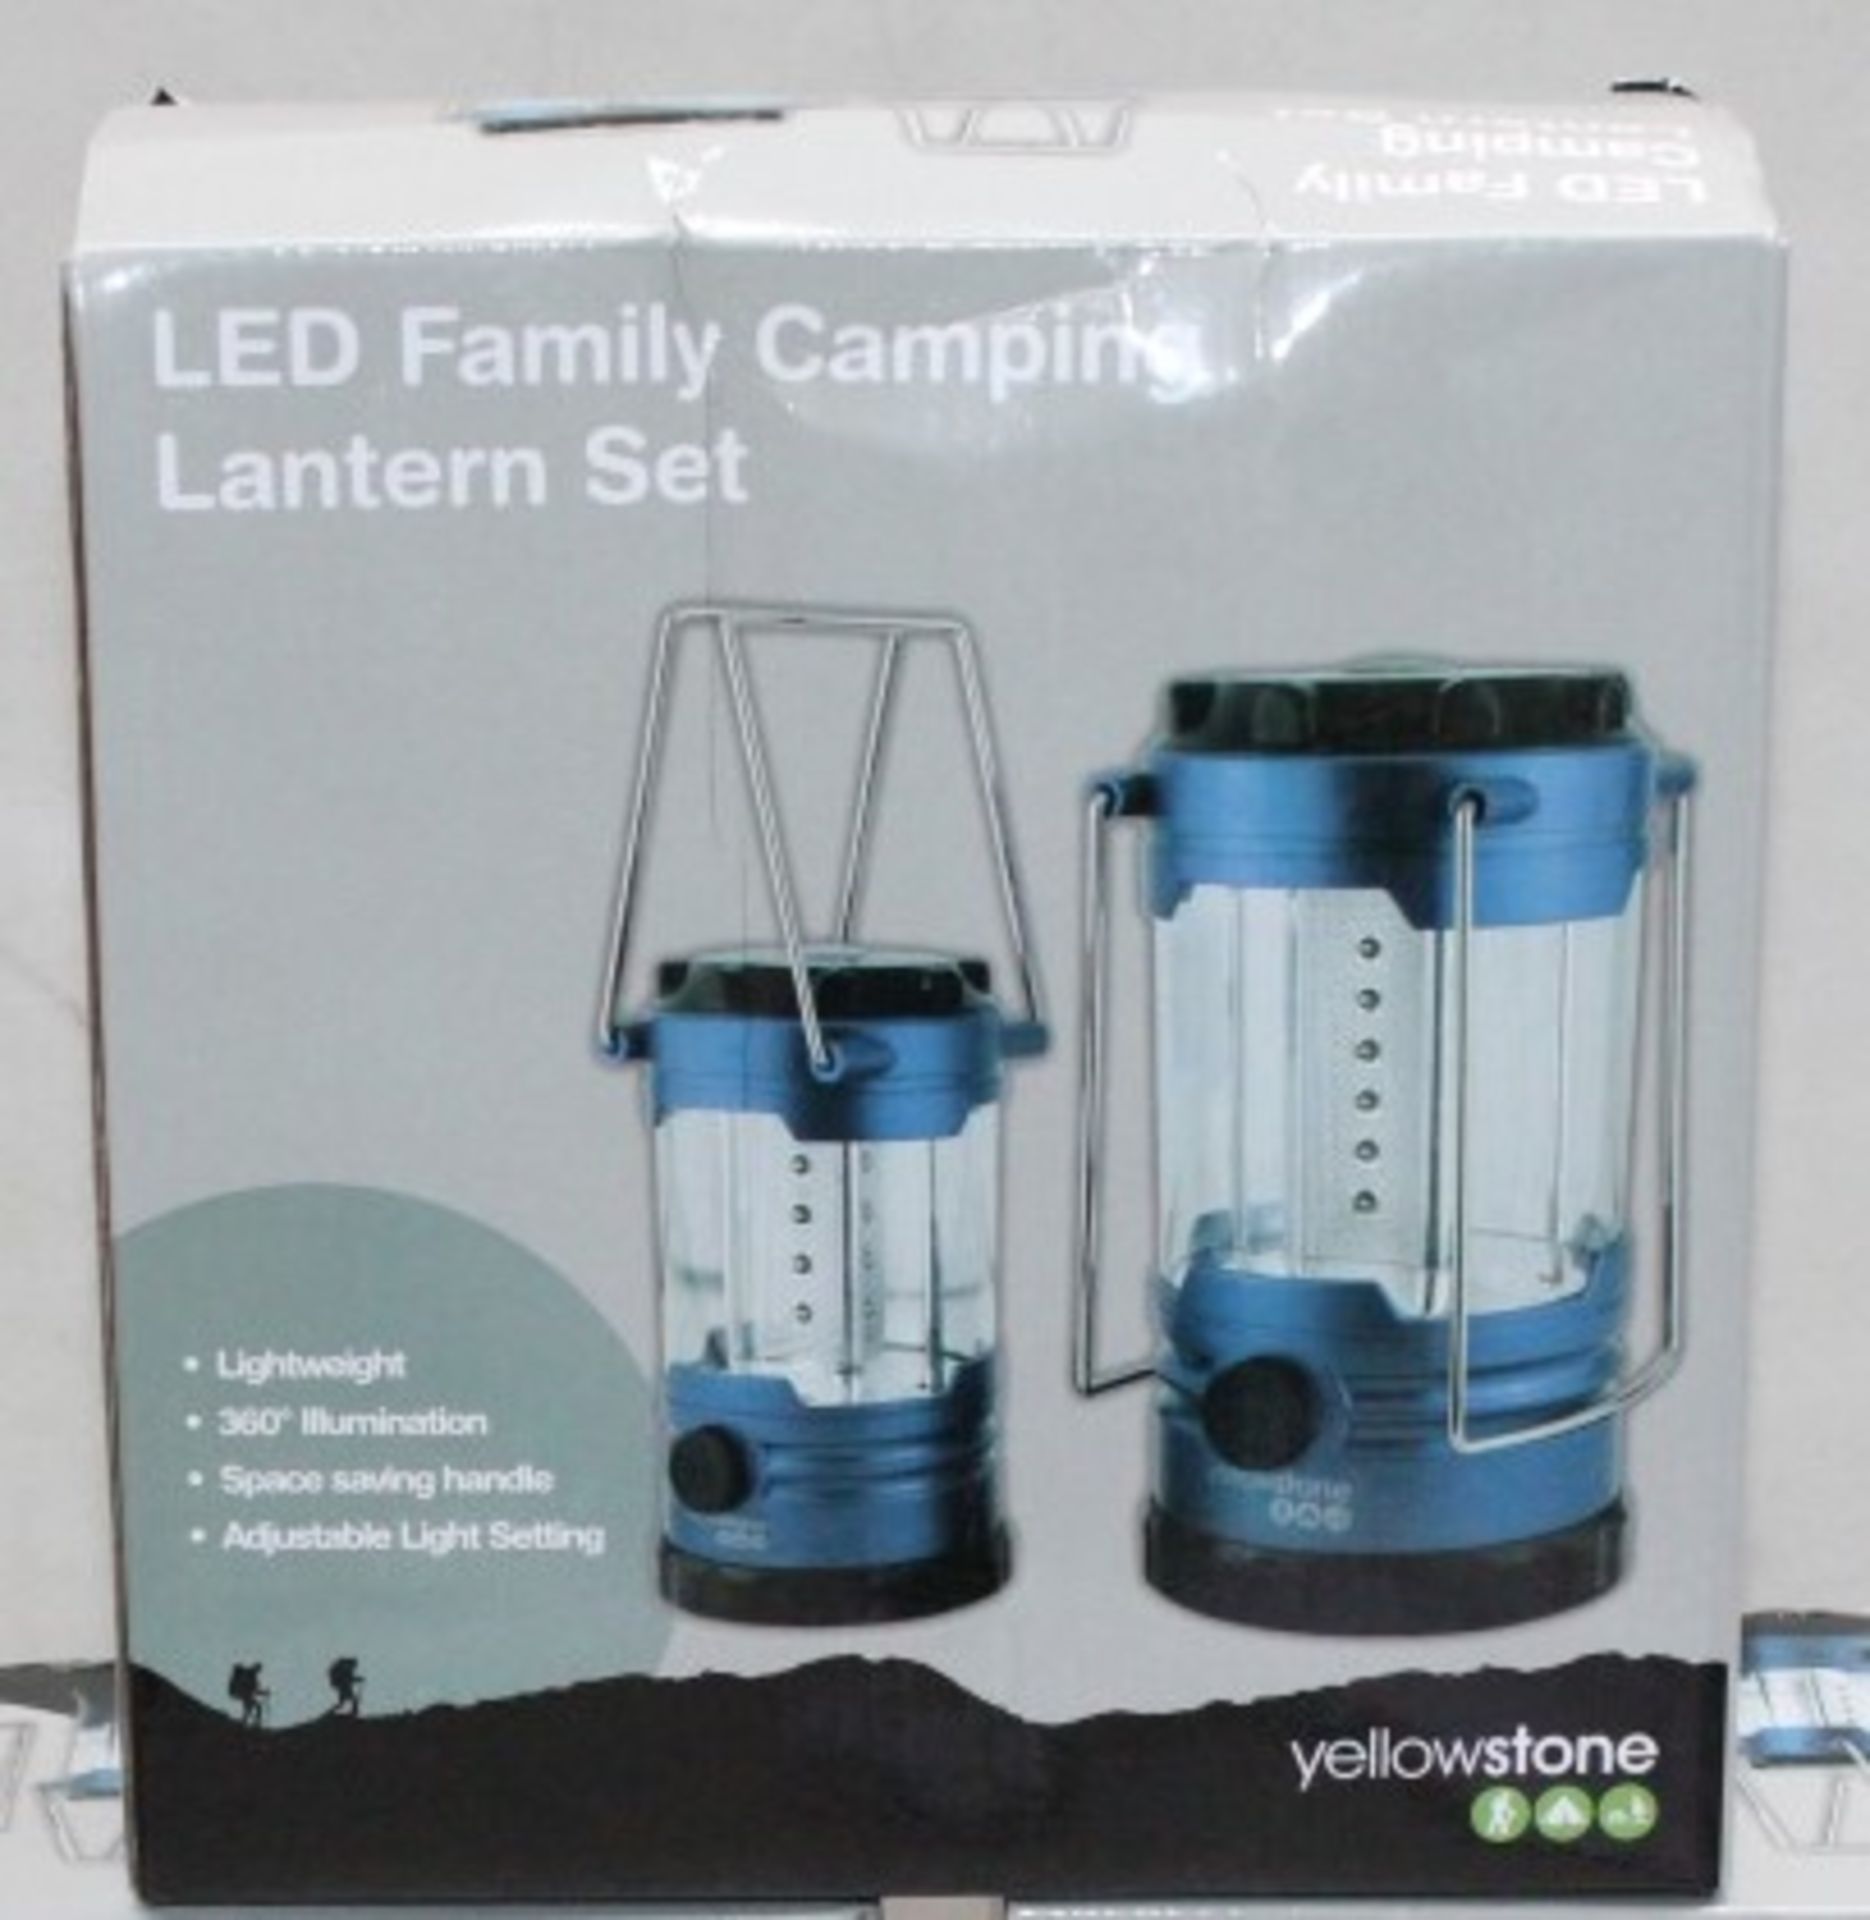 1 x Yellowstone Family Camping LED Lantern Light Set - 2 Lanterns Included - 360 Illumination - - Image 4 of 4